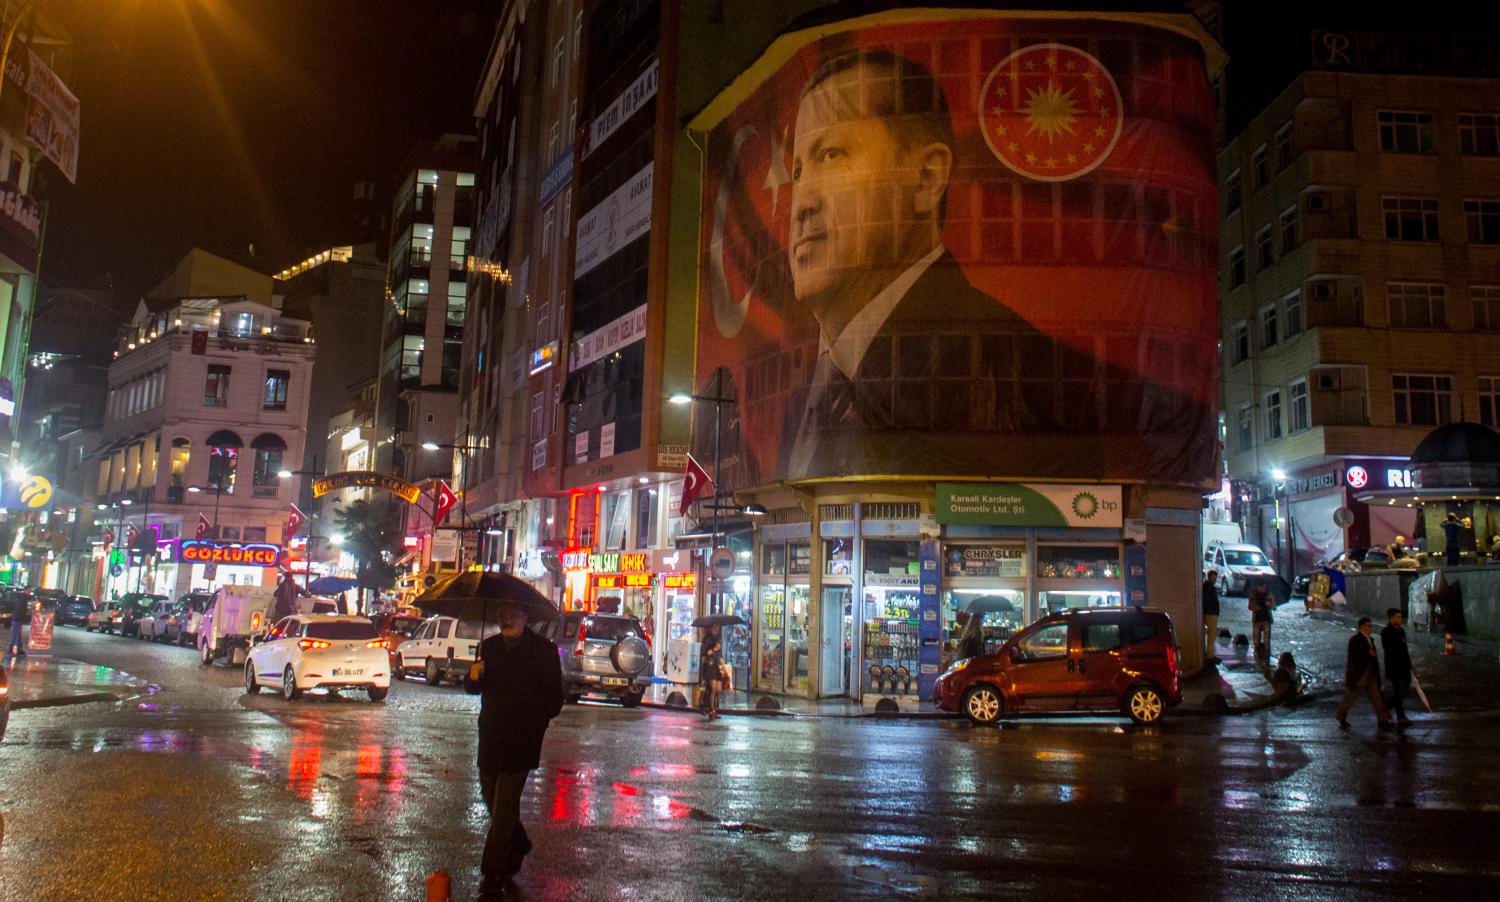 Poster of Turkish President Recep Tayyip Erdogan in Rize, Turkey. (Chris McGrath/Getty)